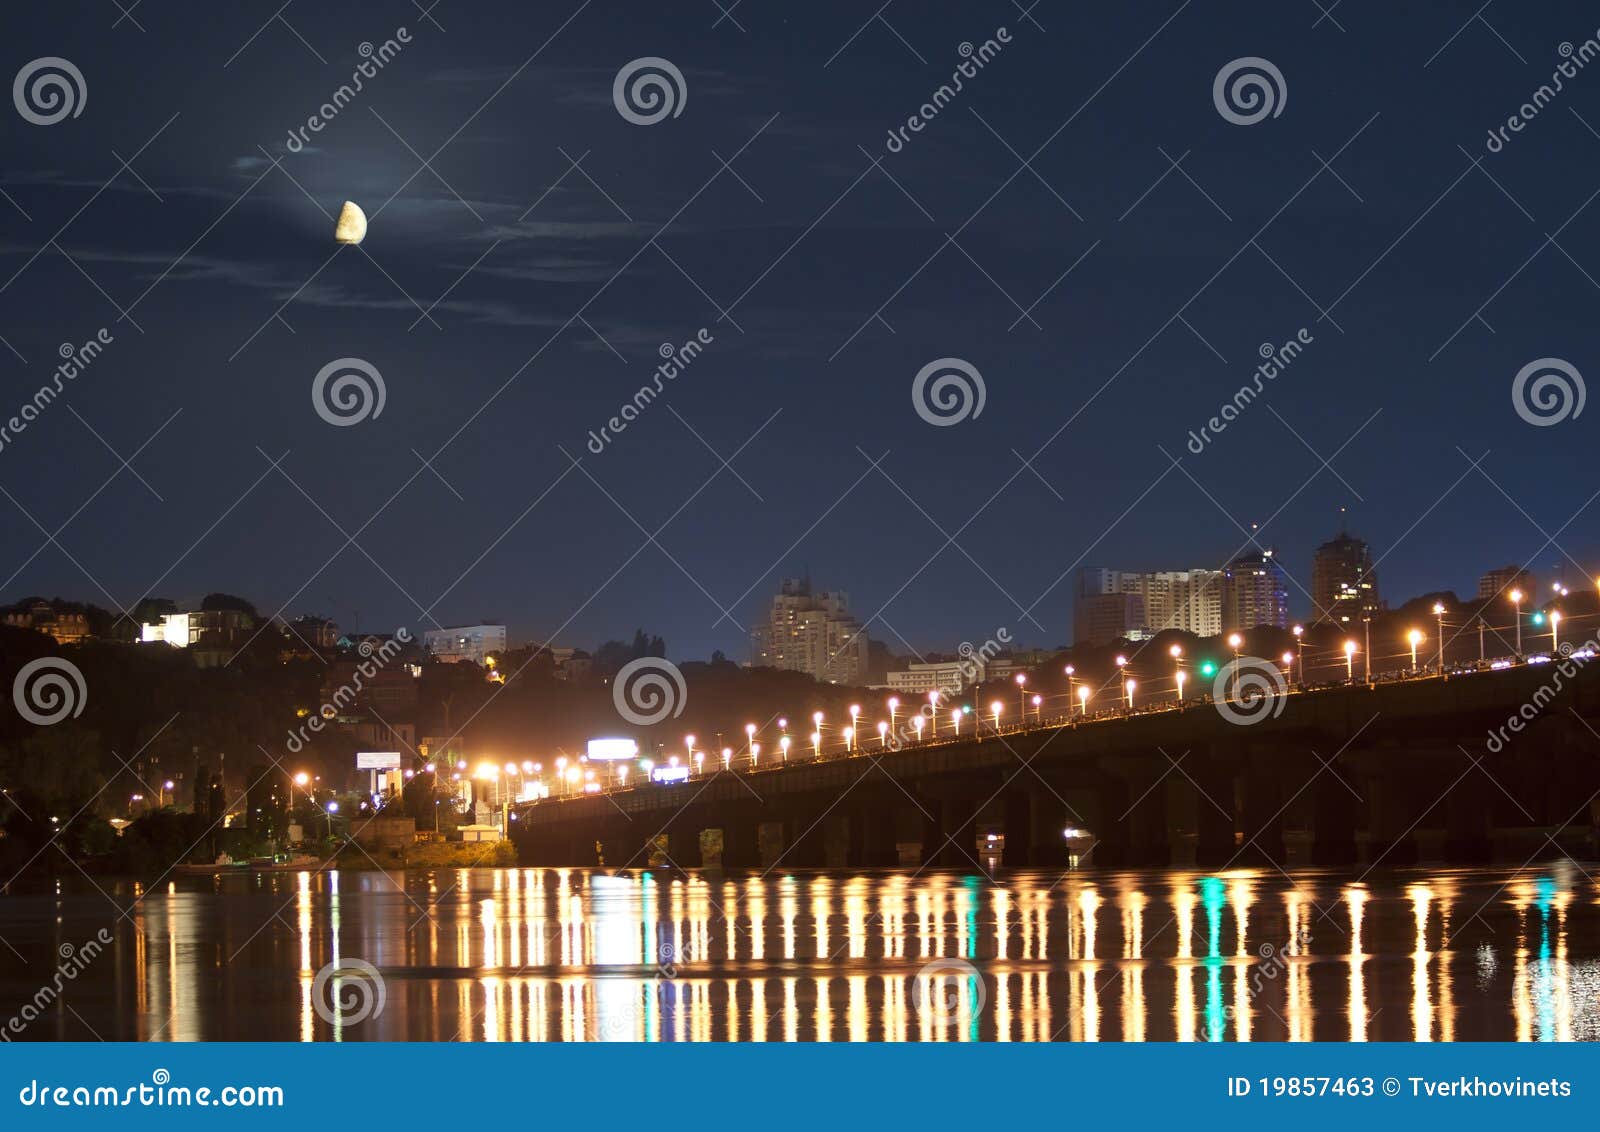 moonset in kiev over dnieper river in lights